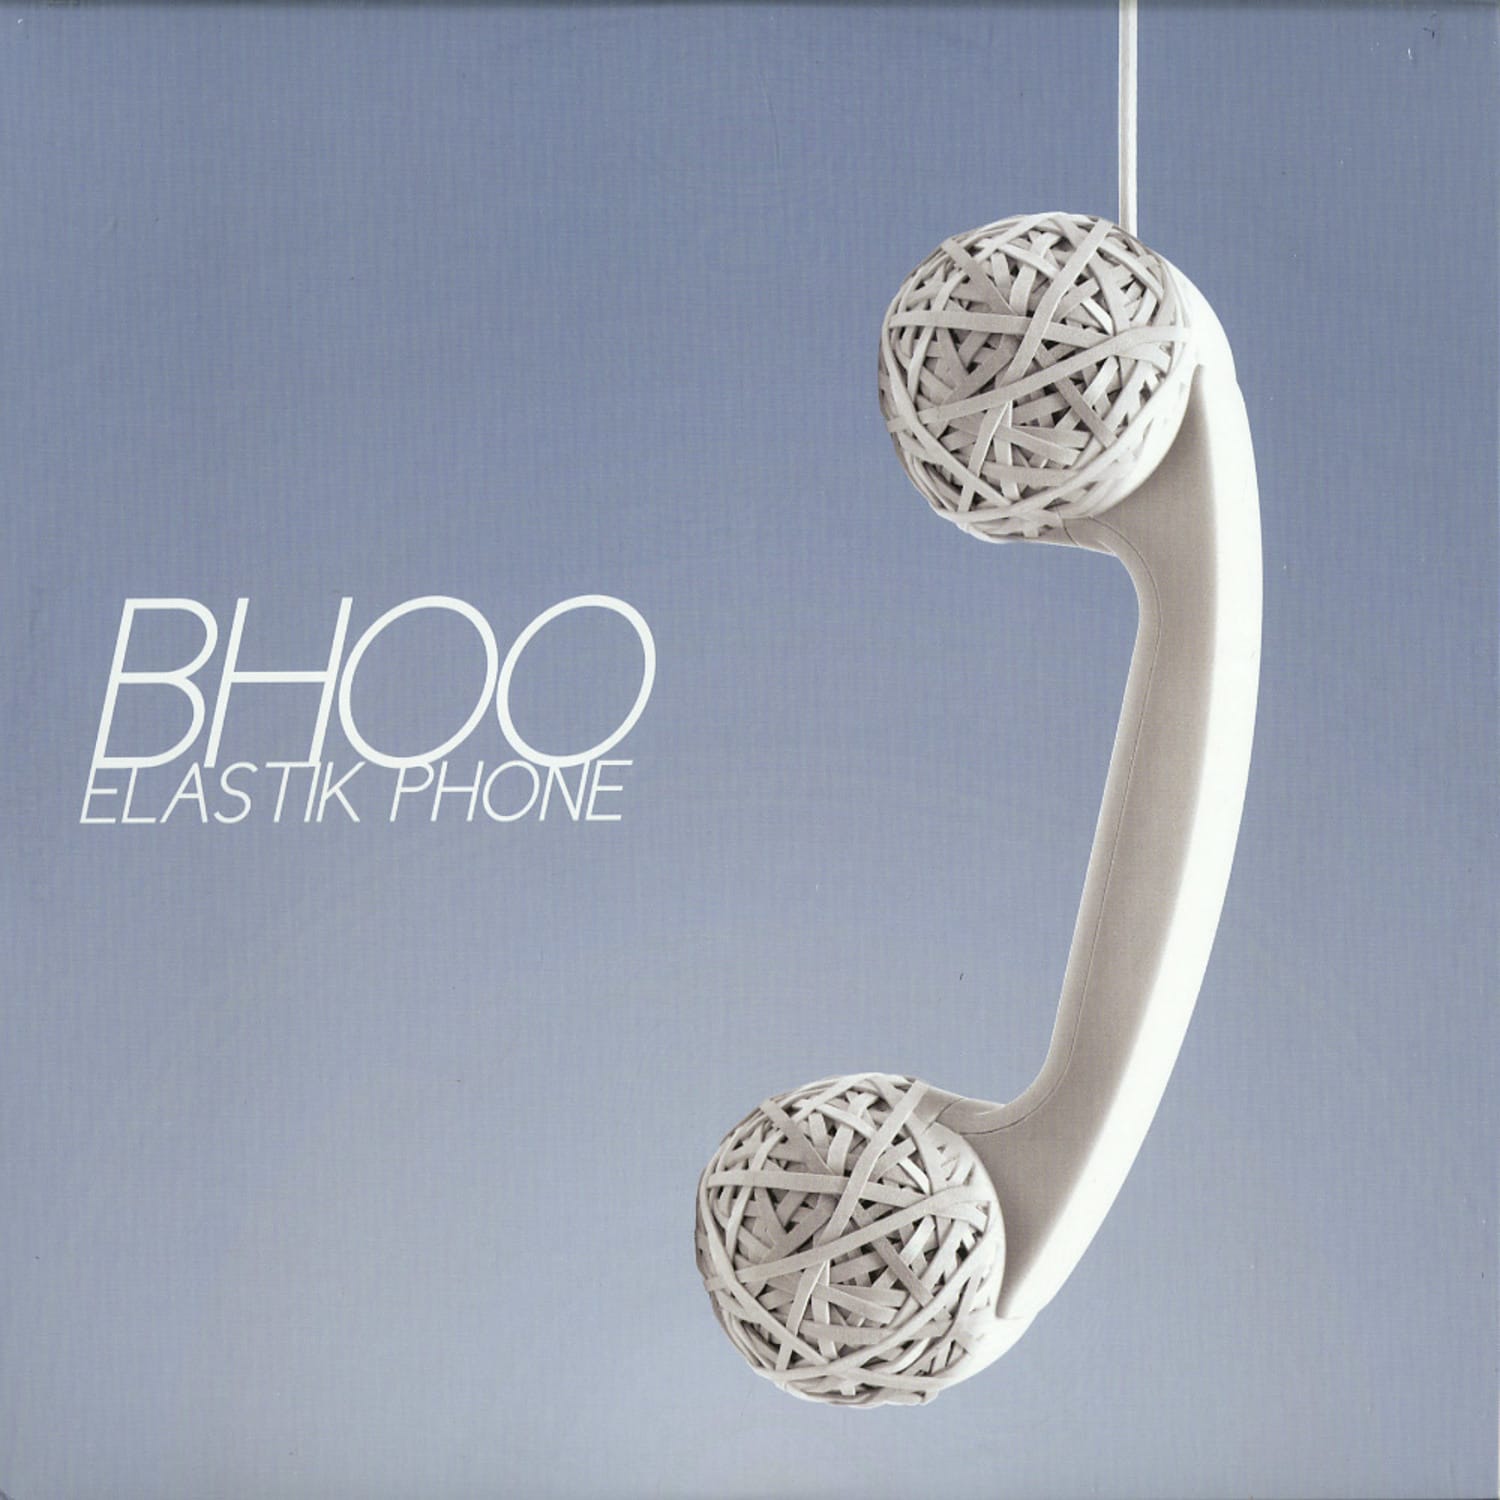 Bhoo - ELASTIK PHONE EP 